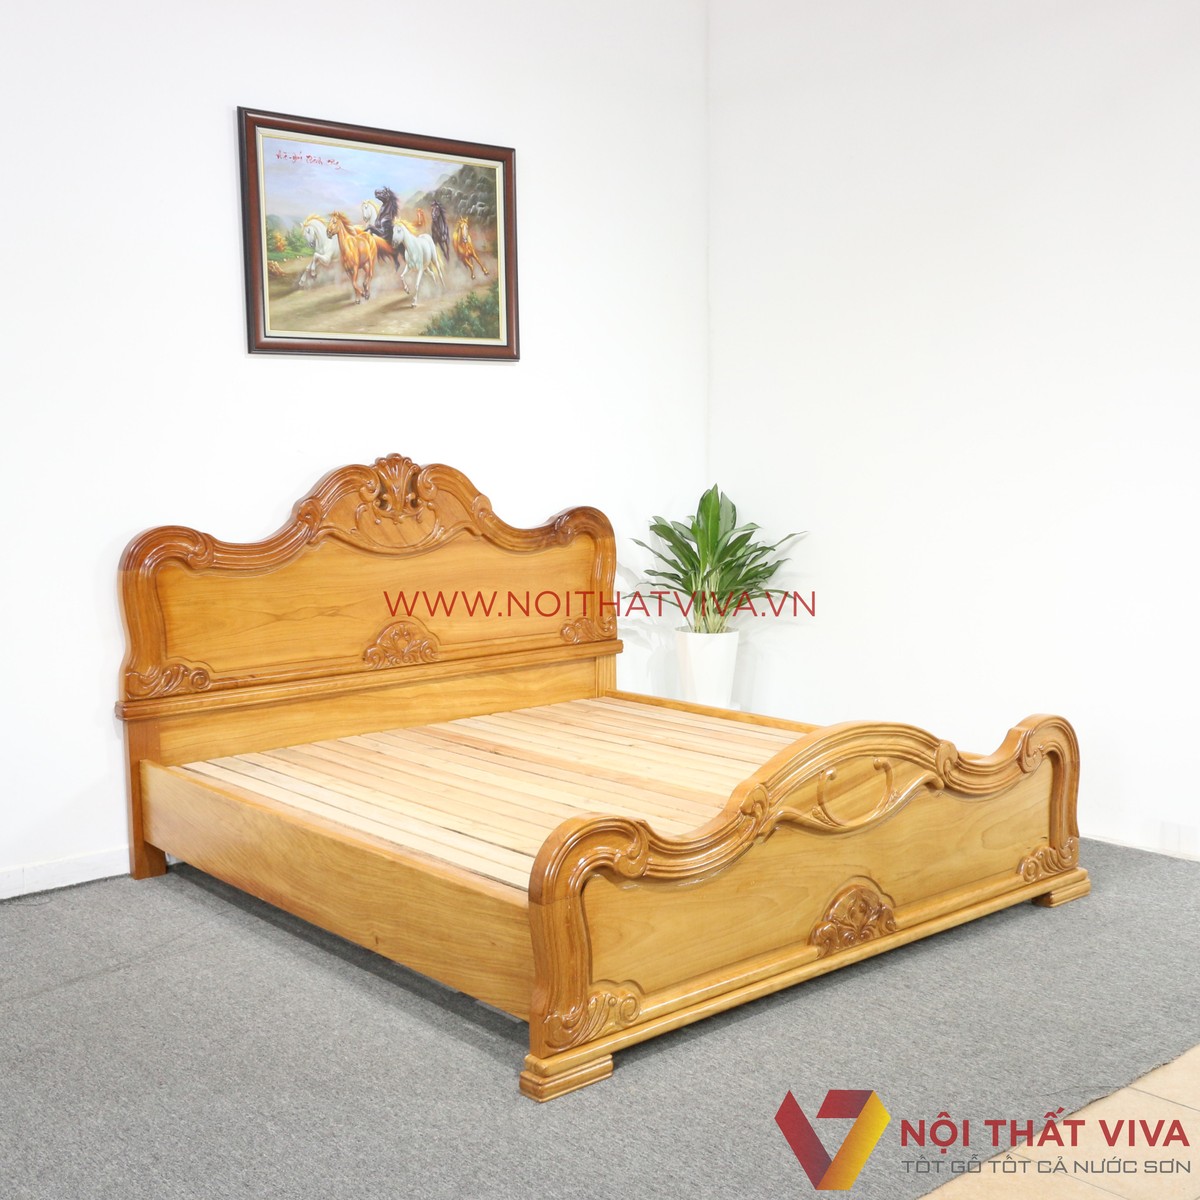 giá giường ngủ gỗ tự nhiên